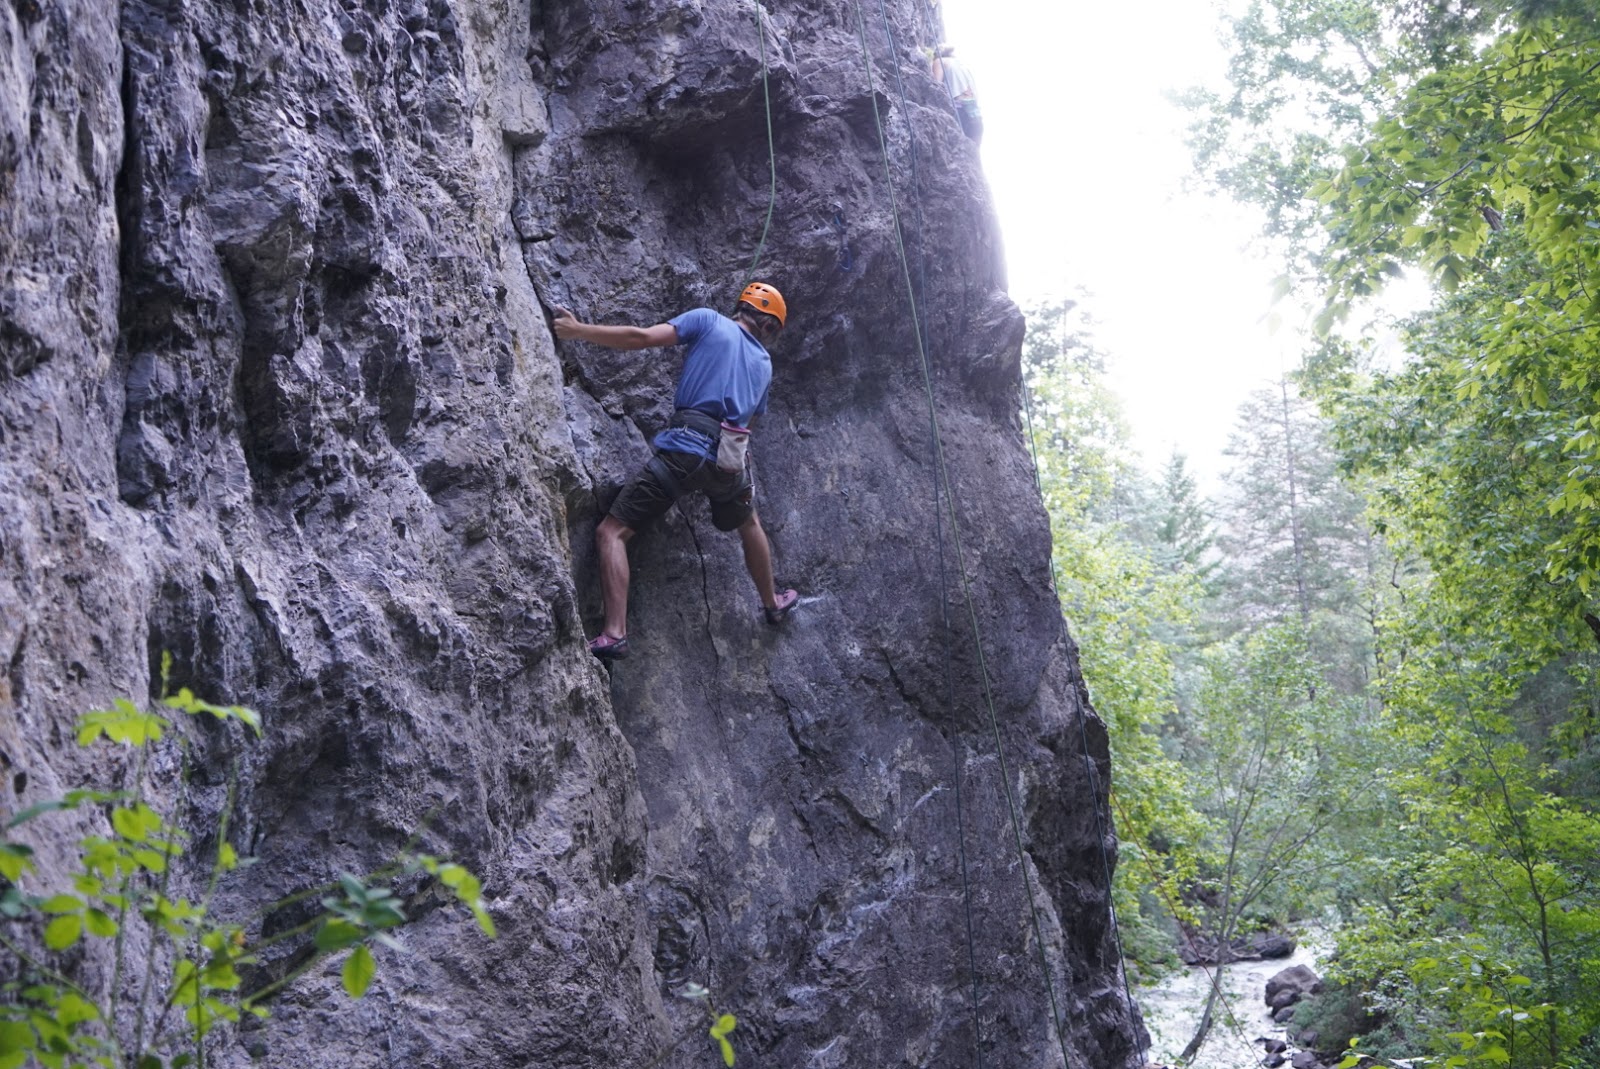 The Best Climbing Gear for Beginner Rock Climbers